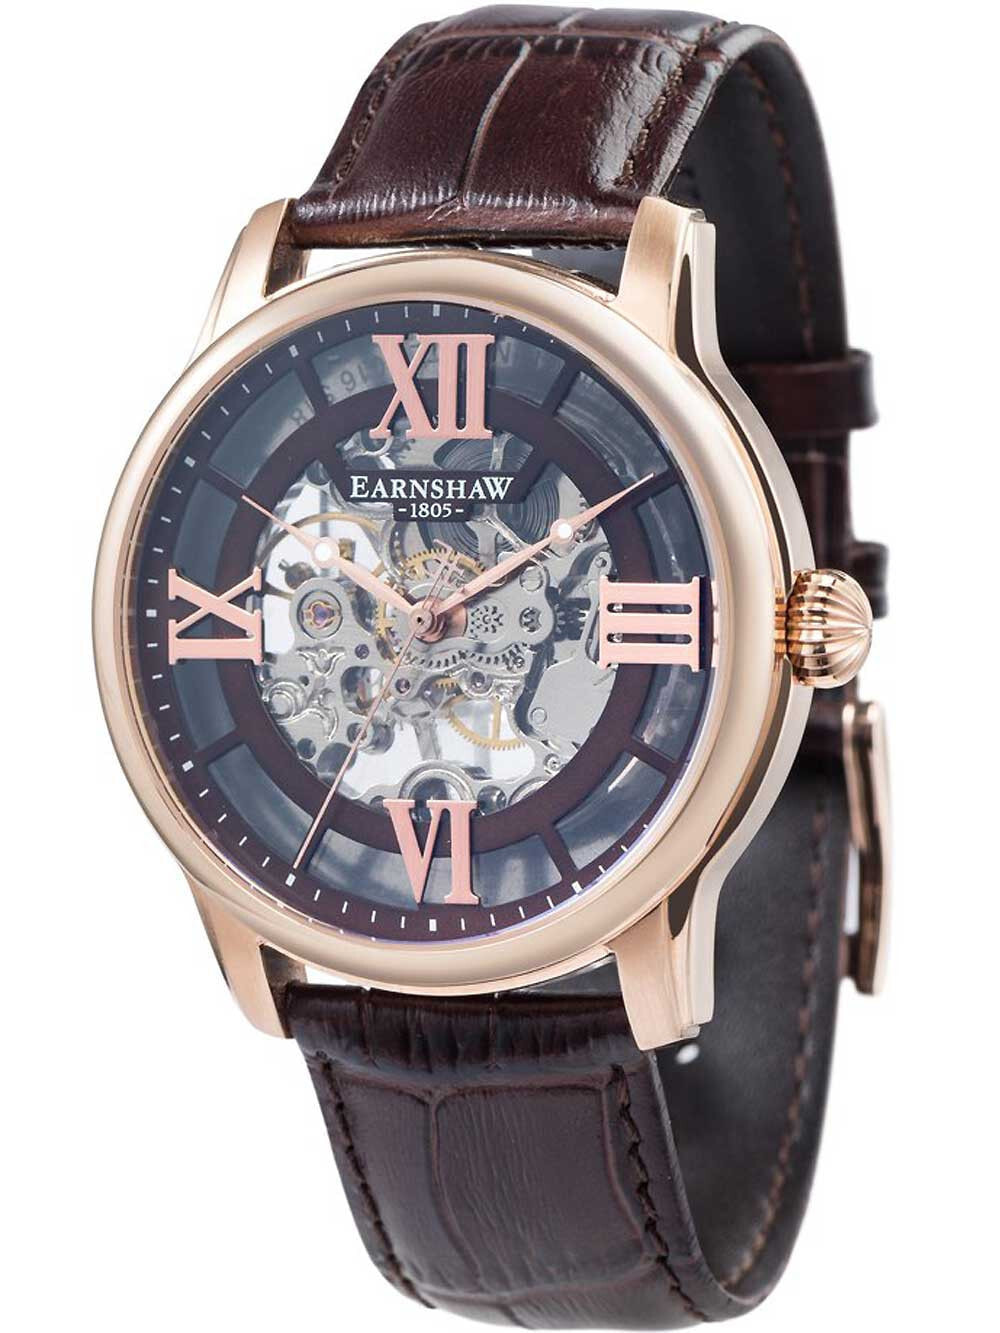 Мужские наручные часы с коричневым кожаным ремешком Thomas Earnshaw ES-8062-02 Longitude manual wind 44mm 5ATM